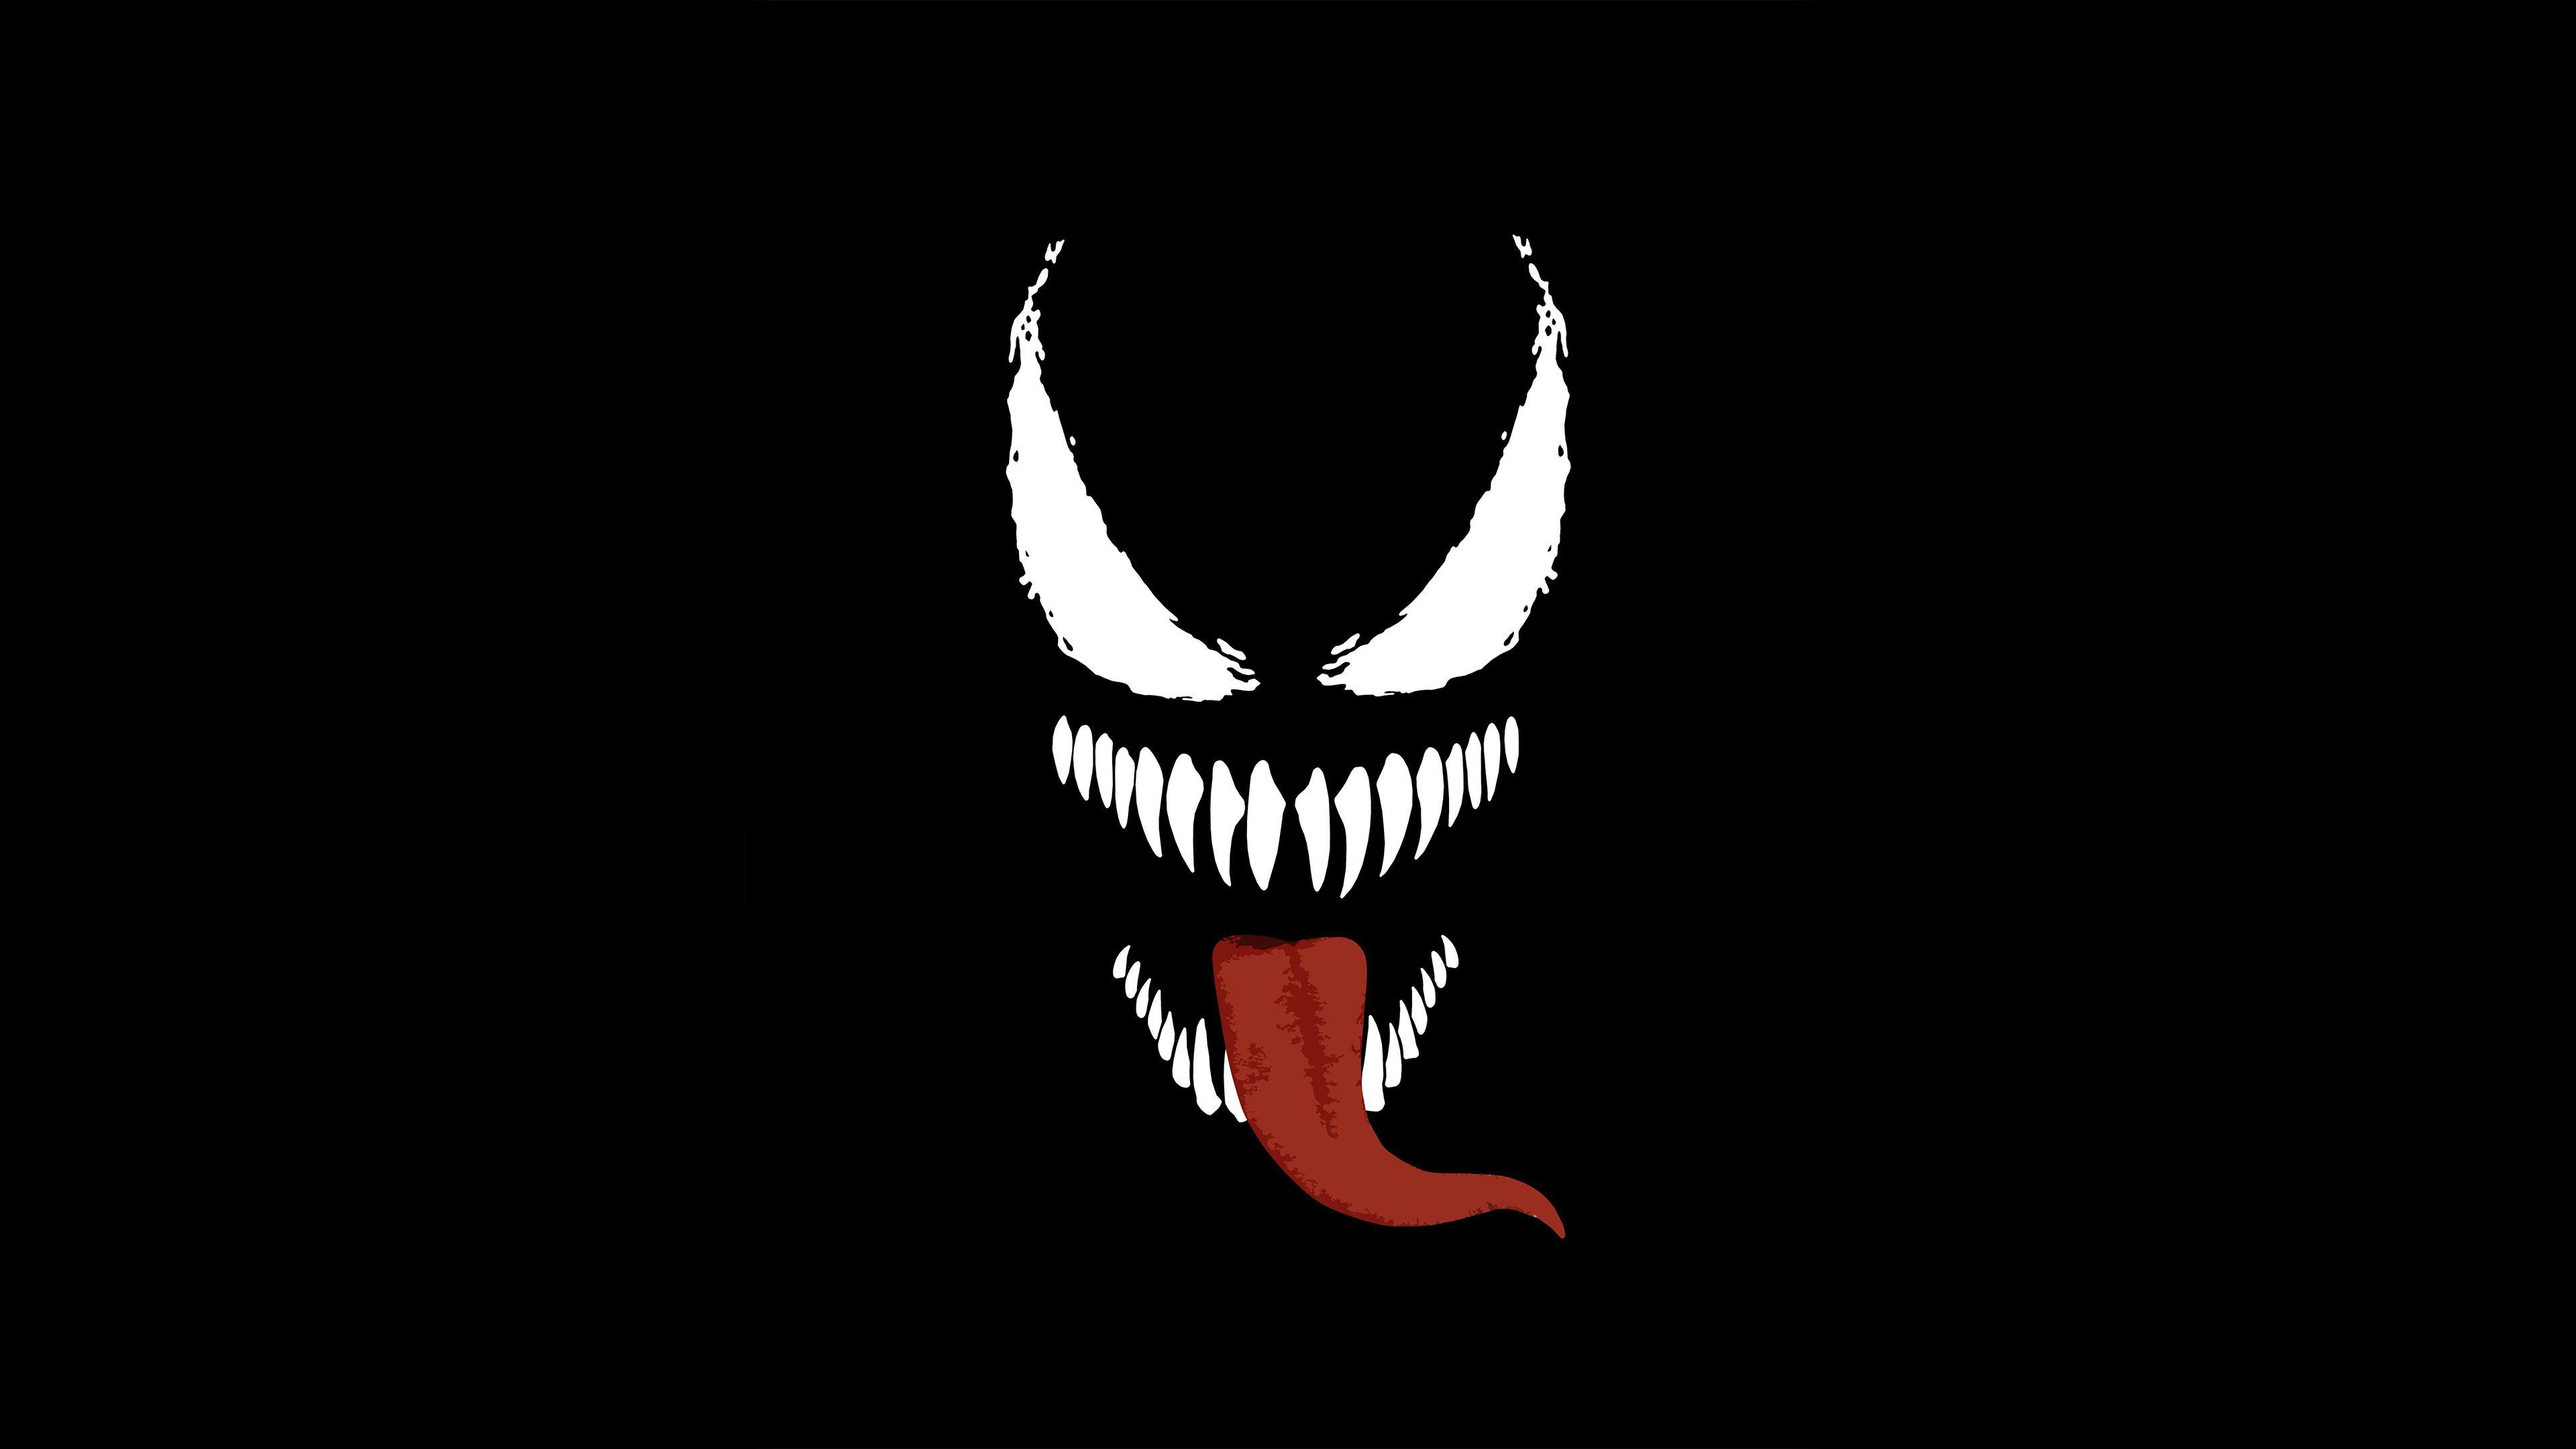 Steam Workshop::Venom Minimal 4K